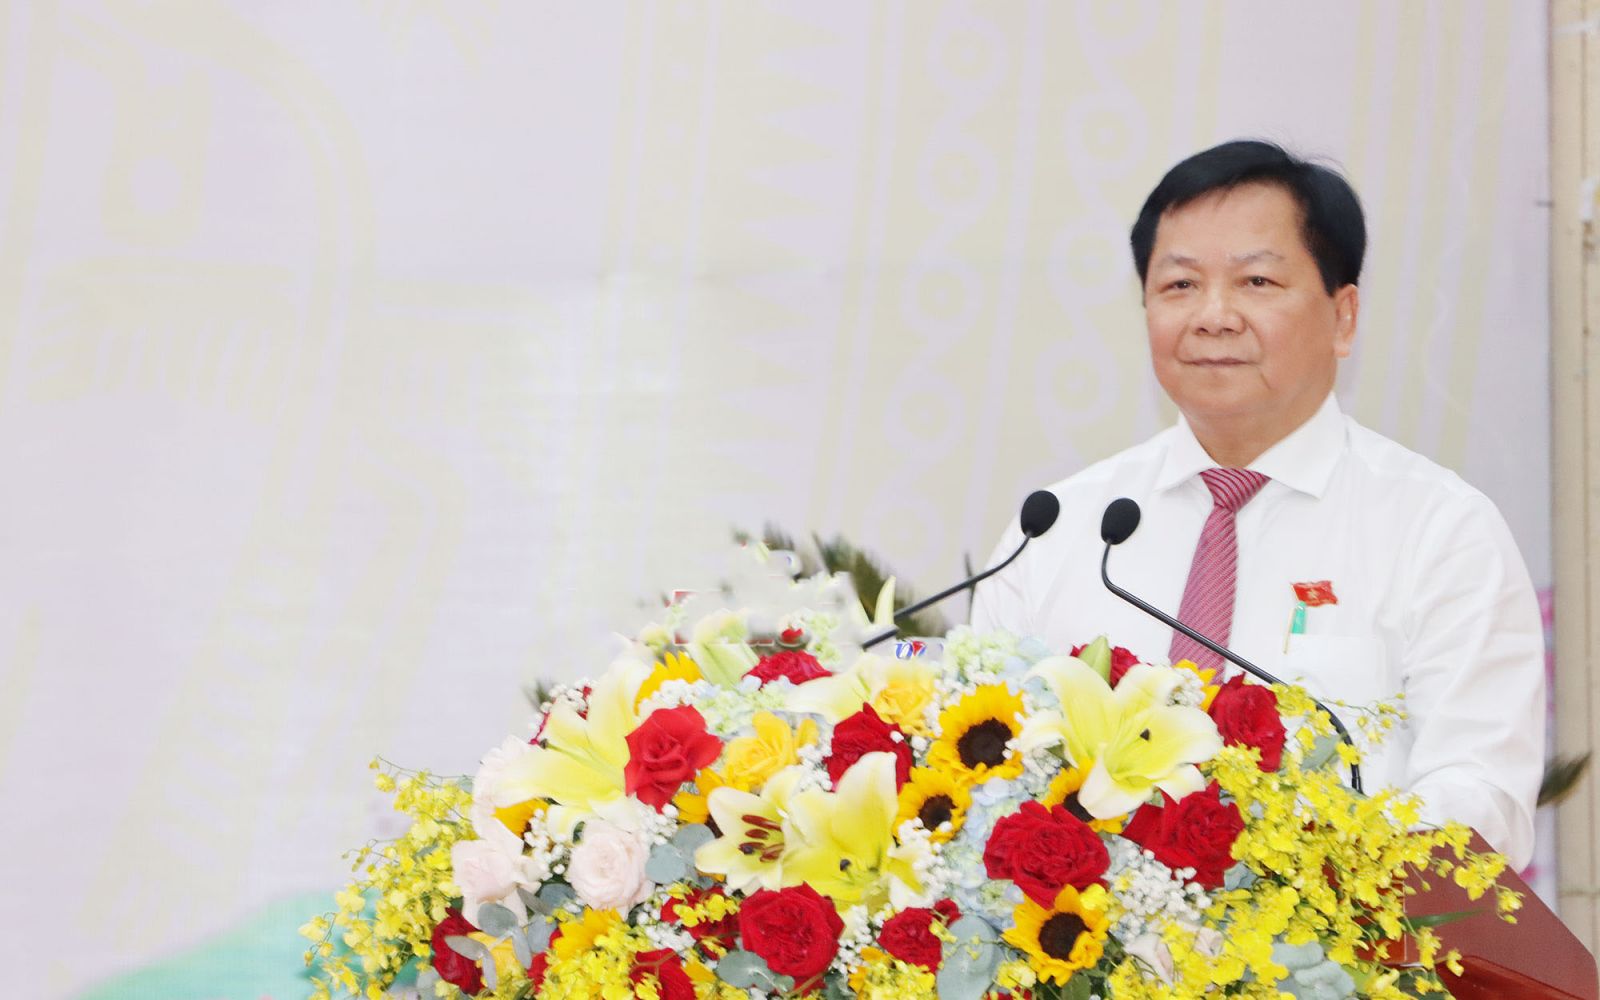 Phó Chủ tịch UBND tỉnh Trần Văn Mi báo cáo tóm tắt tình hình kinh tế - xã hội năm 2022 và kế hoạch phát triển kinh tế - xã hội năm 2023, với 10 nhóm nhiệm vụ, giải pháp trọng tâm nhằm thực hiện thắng lợi nhiệm vụ năm 2023